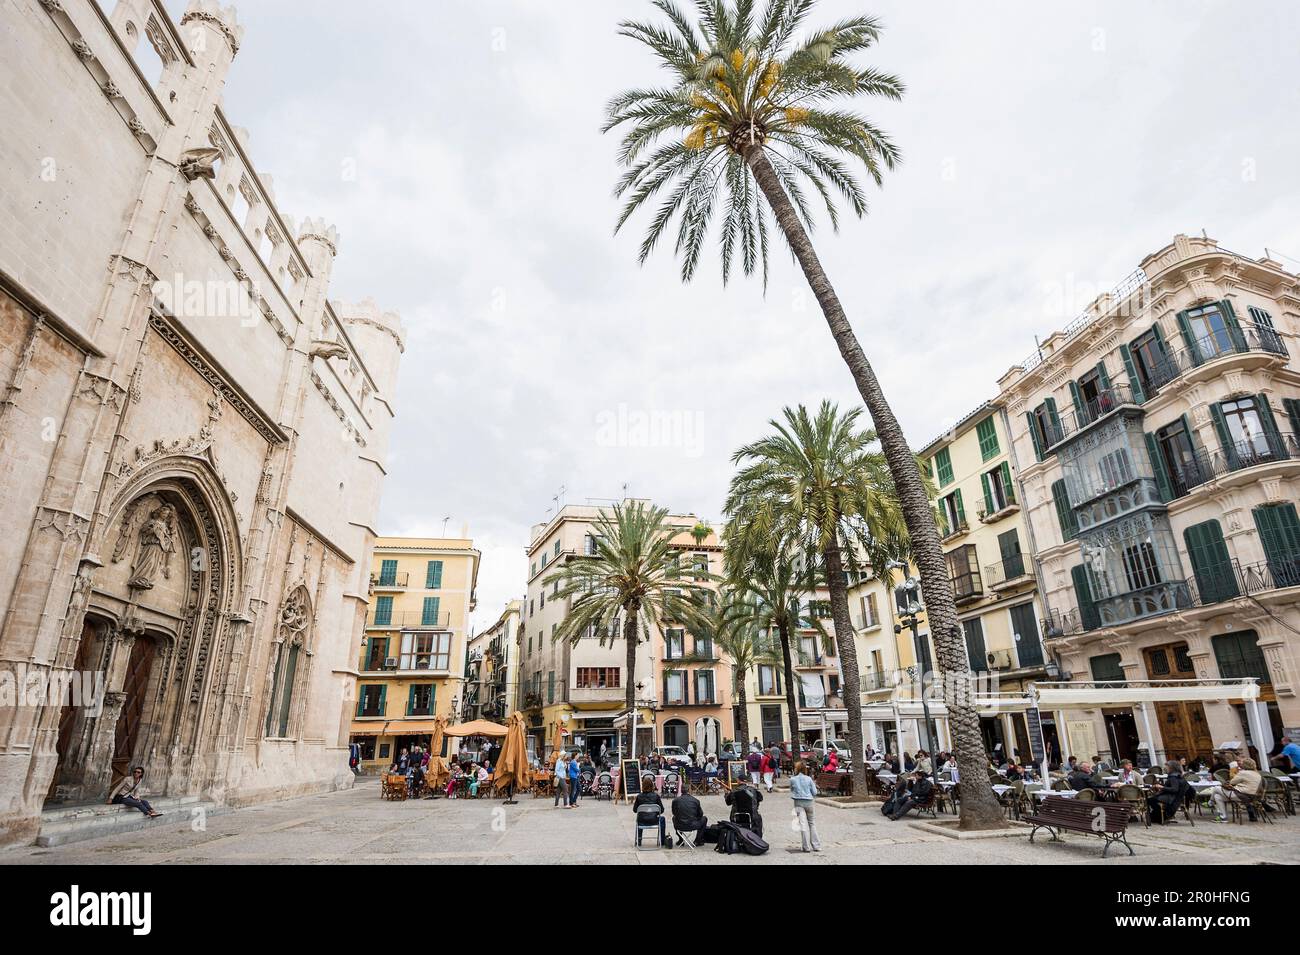 Placa Drassana dans la partie historique de Palma de Mallorca, Majorque, Espagne Banque D'Images